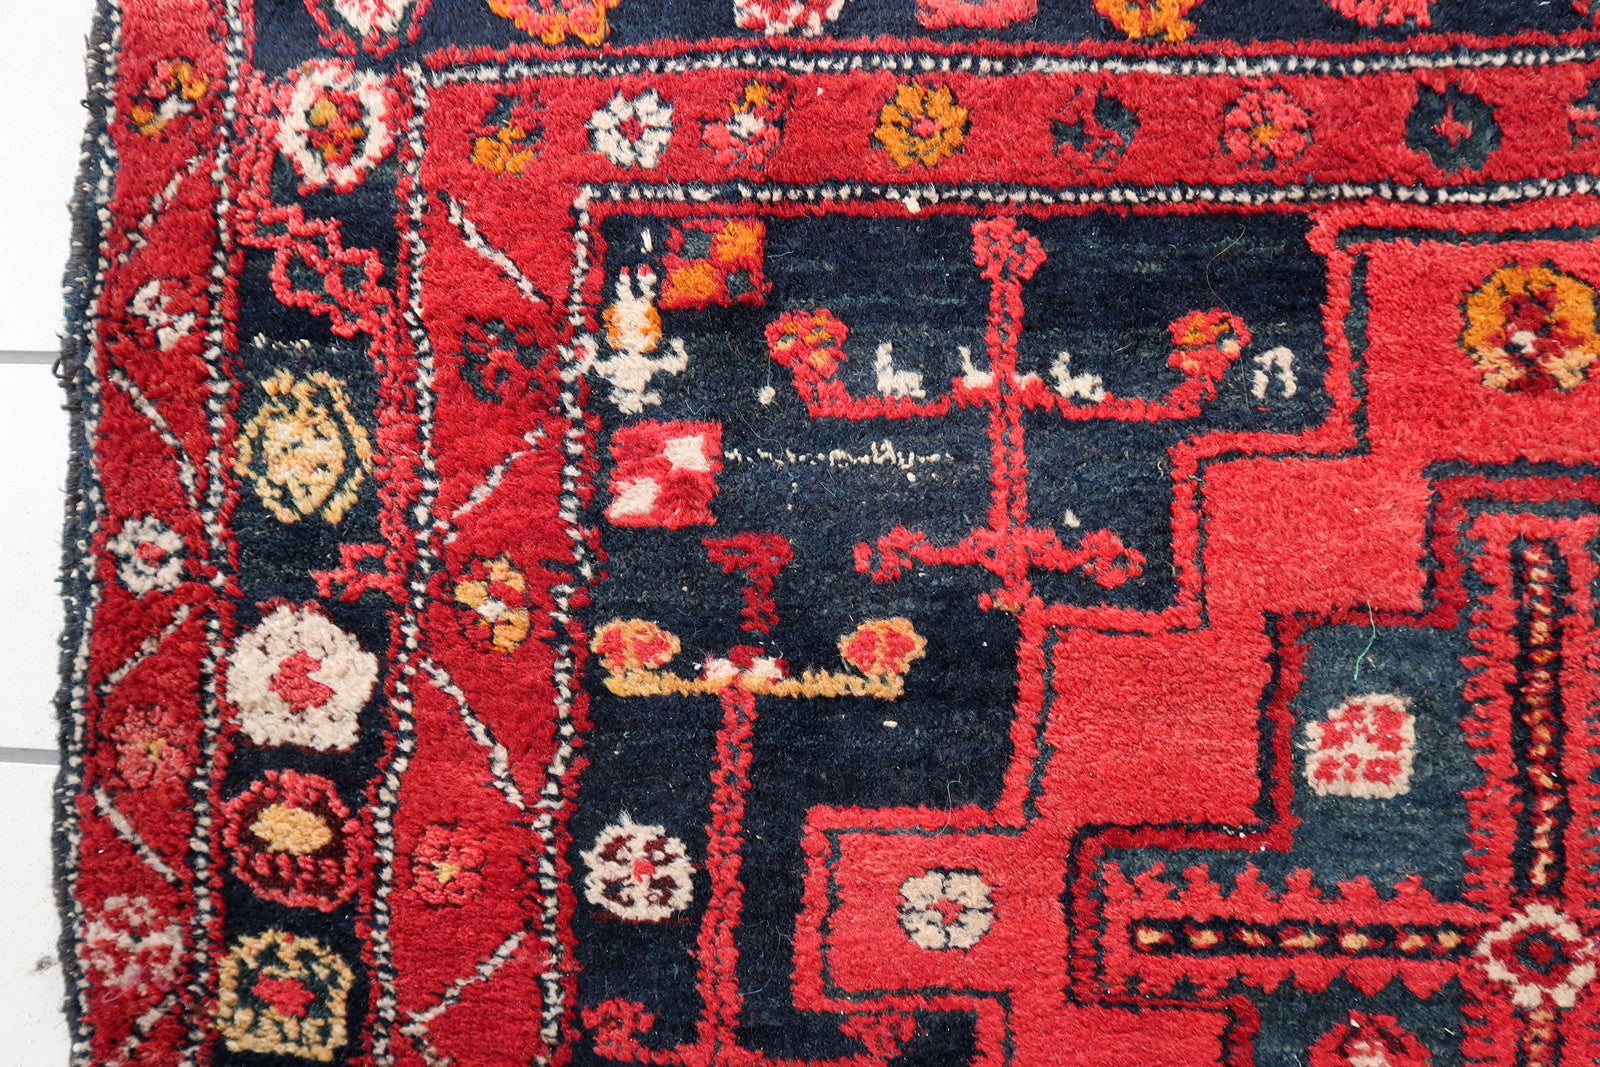 Traditional Middle Eastern Carpet Craftsmanship